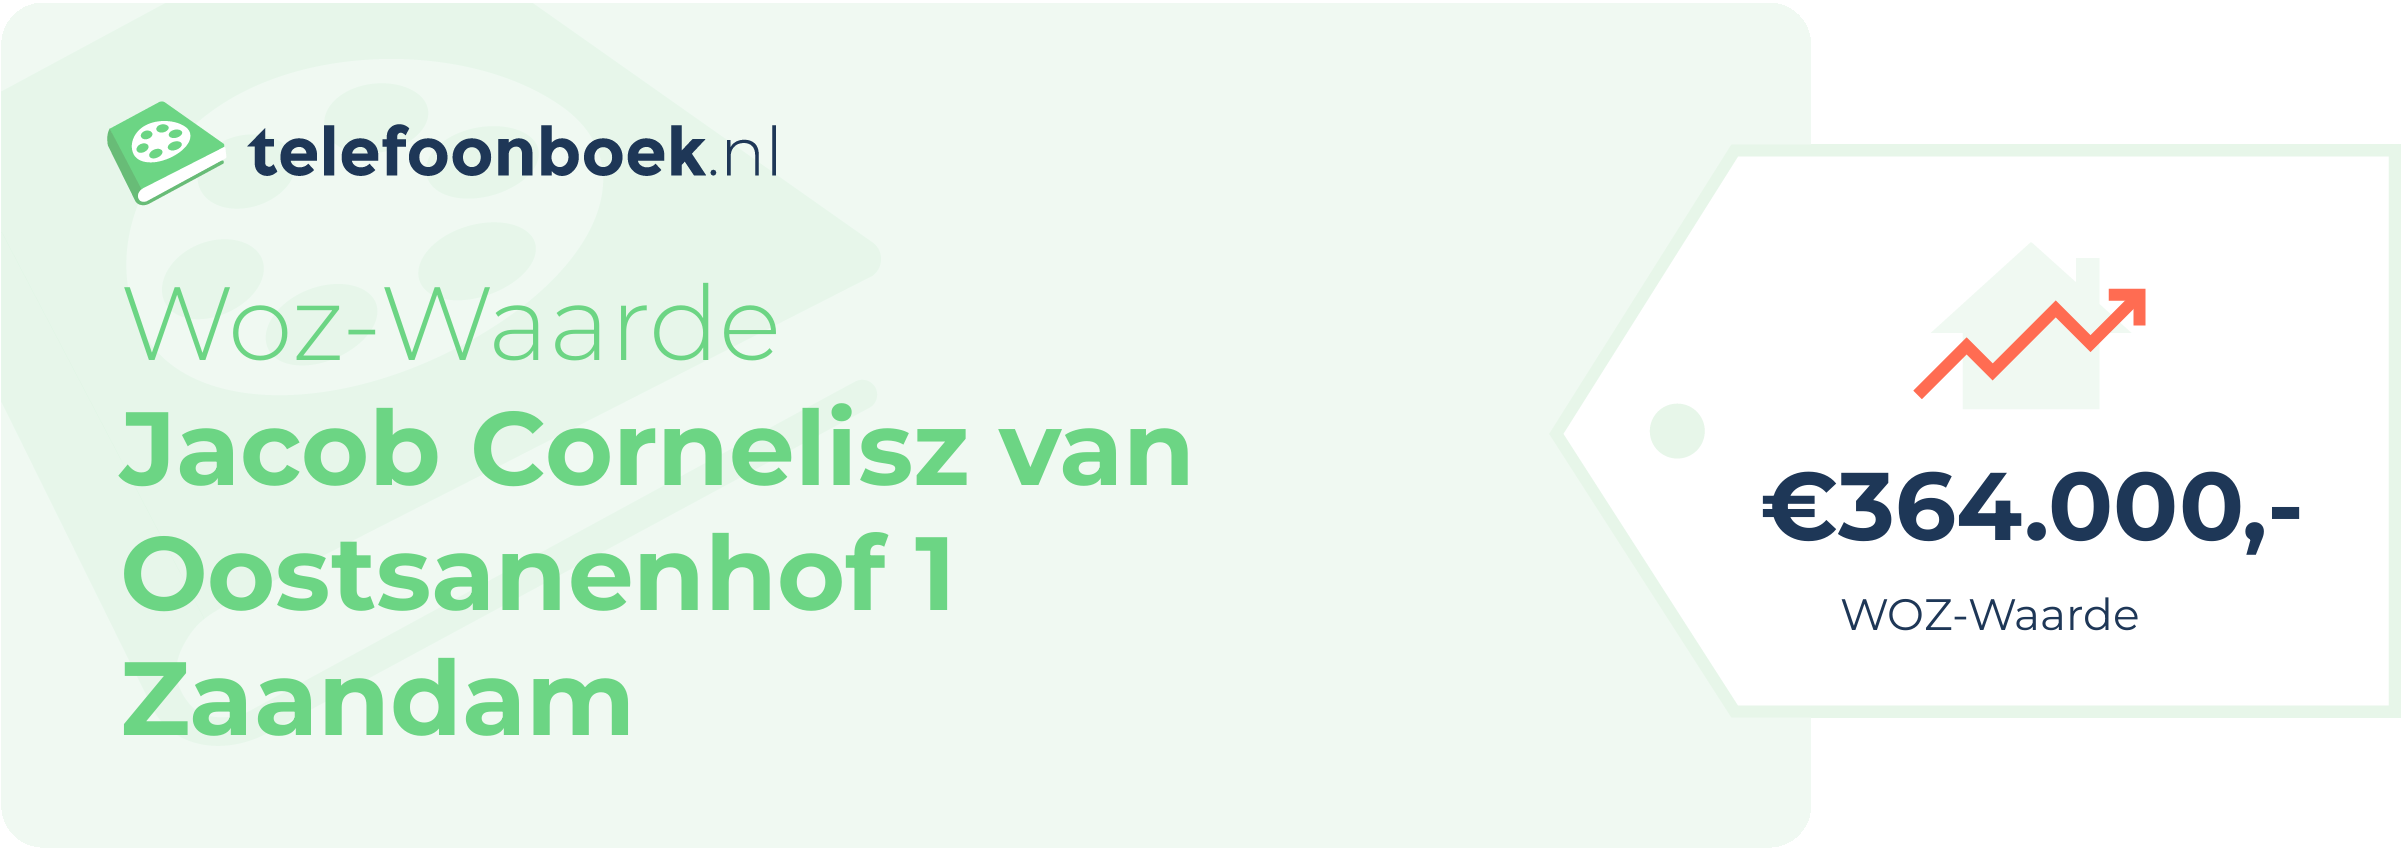 WOZ-waarde Jacob Cornelisz Van Oostsanenhof 1 Zaandam